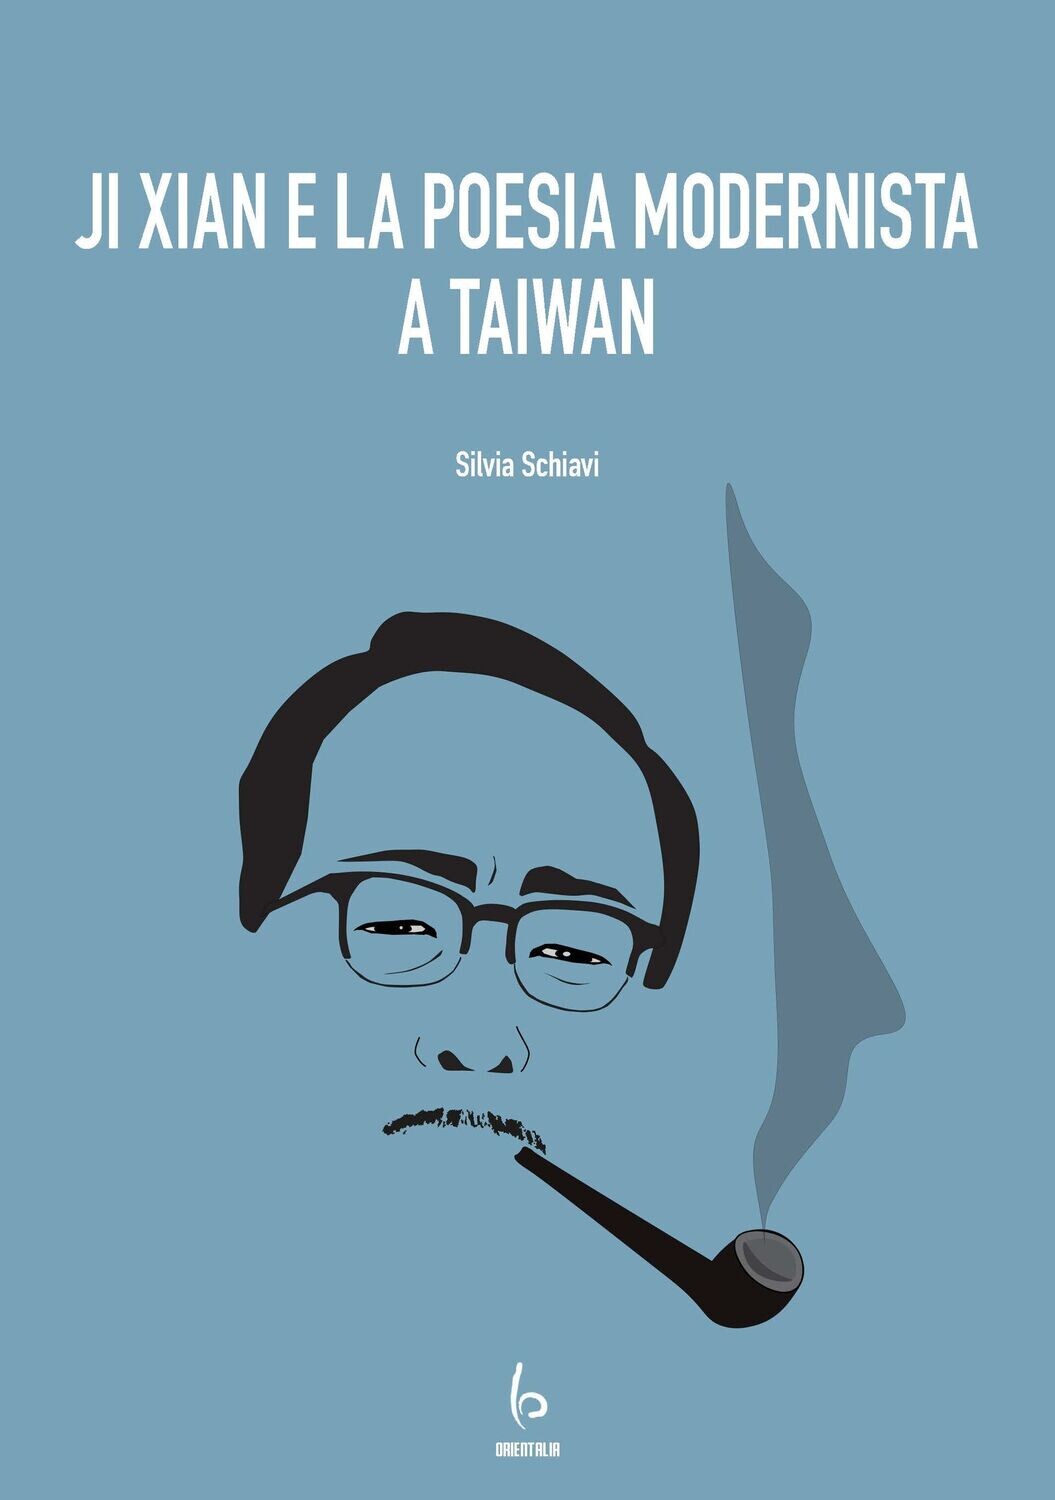 Ji Xian e la poesia modernista a Taiwan